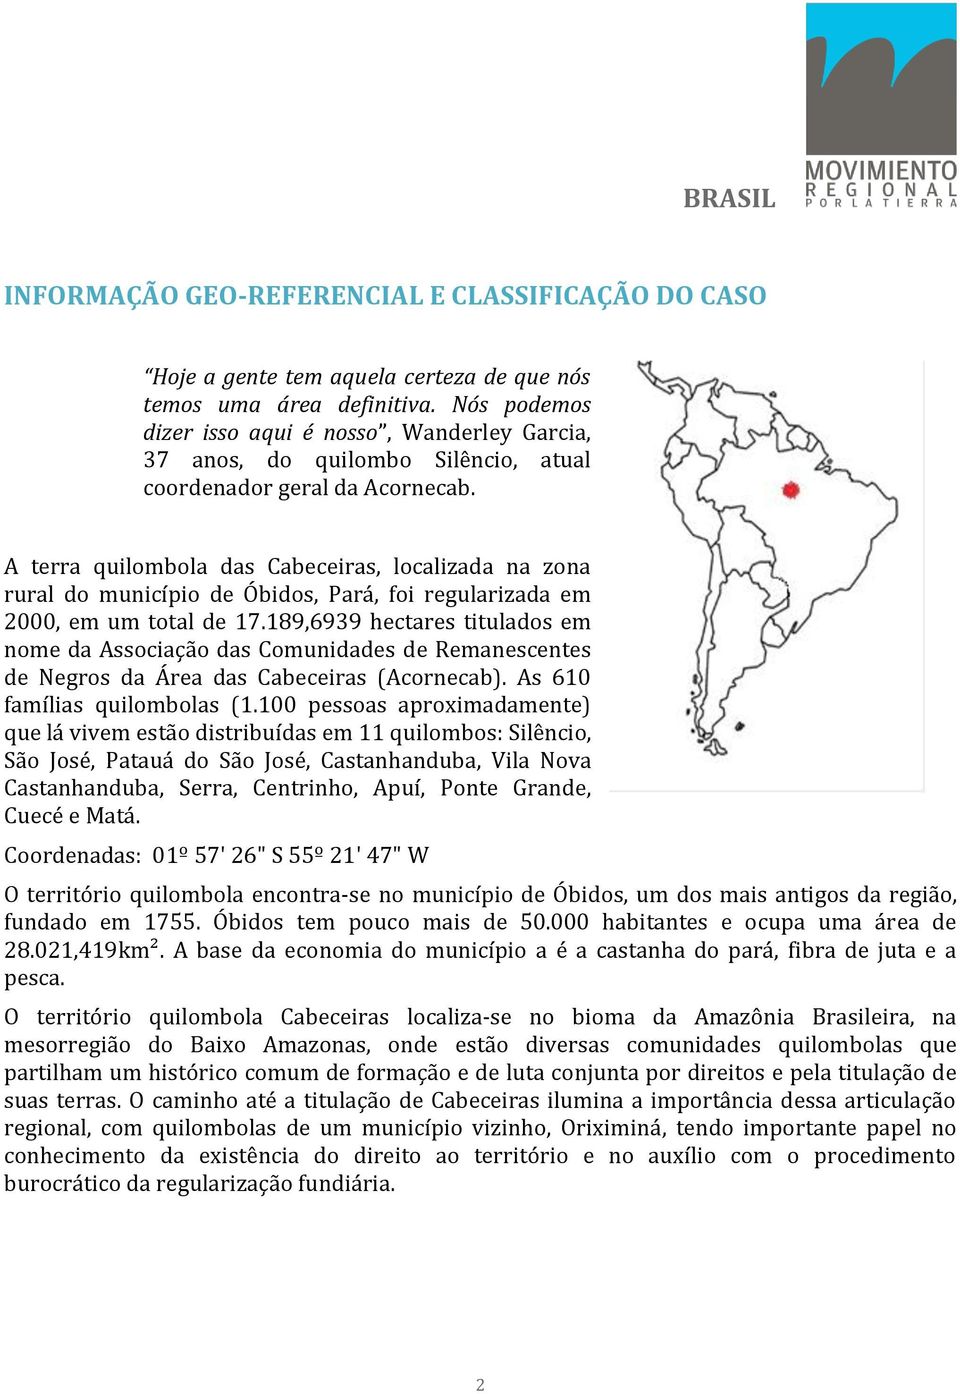 A terra quilombola das Cabeceiras, localizada na zona rural do município de Óbidos, Pará, foi regularizada em 2000, em um total de 17.